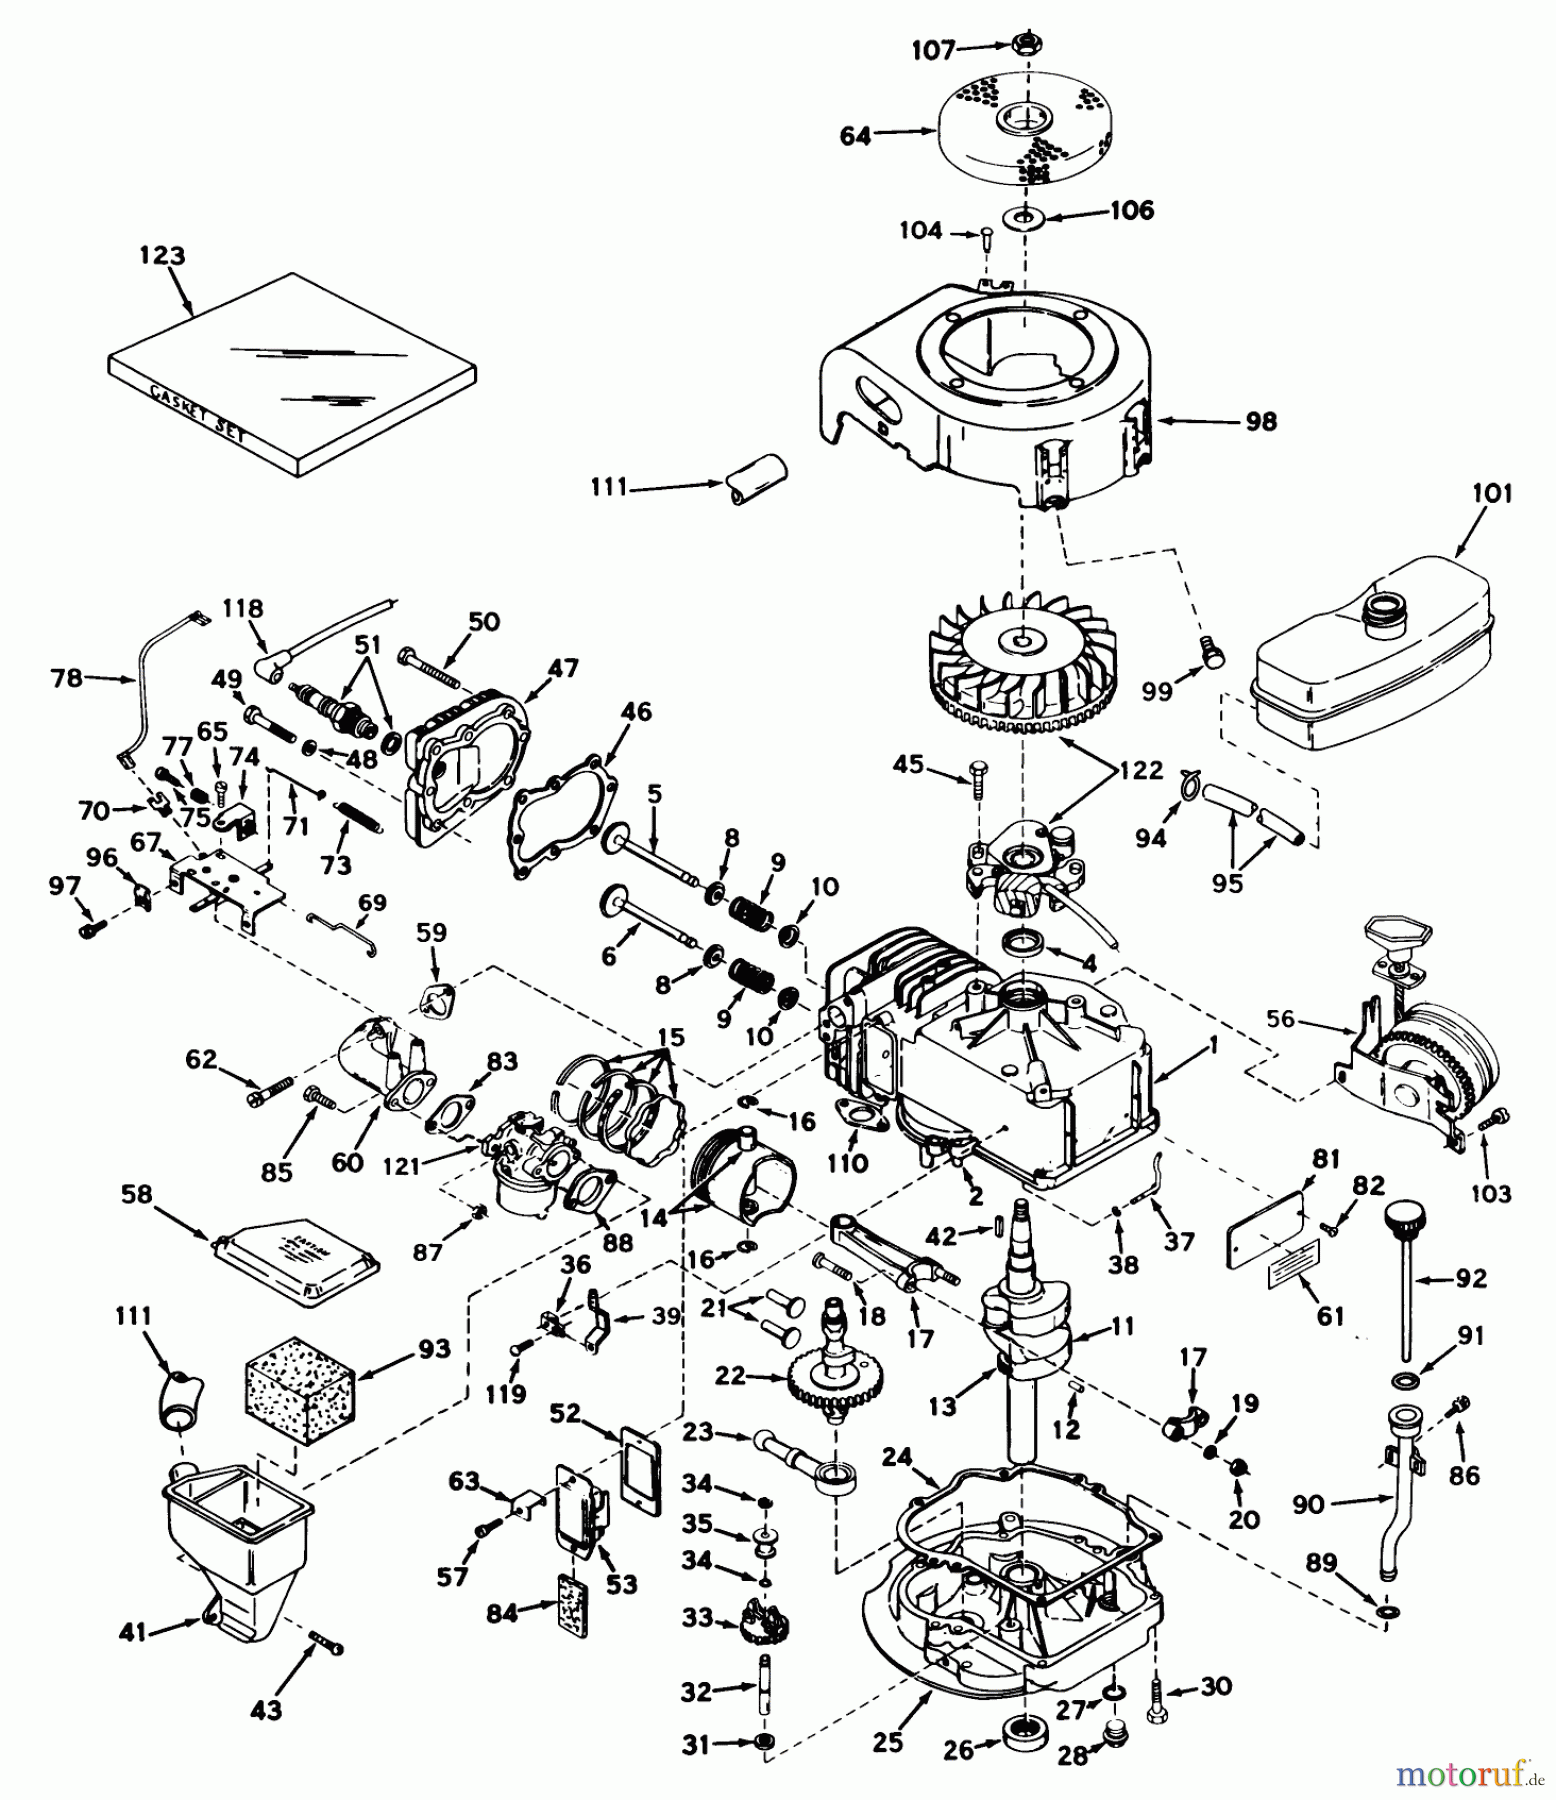  Toro Neu Mowers, Walk-Behind Seite 1 18070 - Toro Lawnmower, 1972 (2000001-2999999) ENGINE TECUMSEH MODEL NO. LAV30-30481J